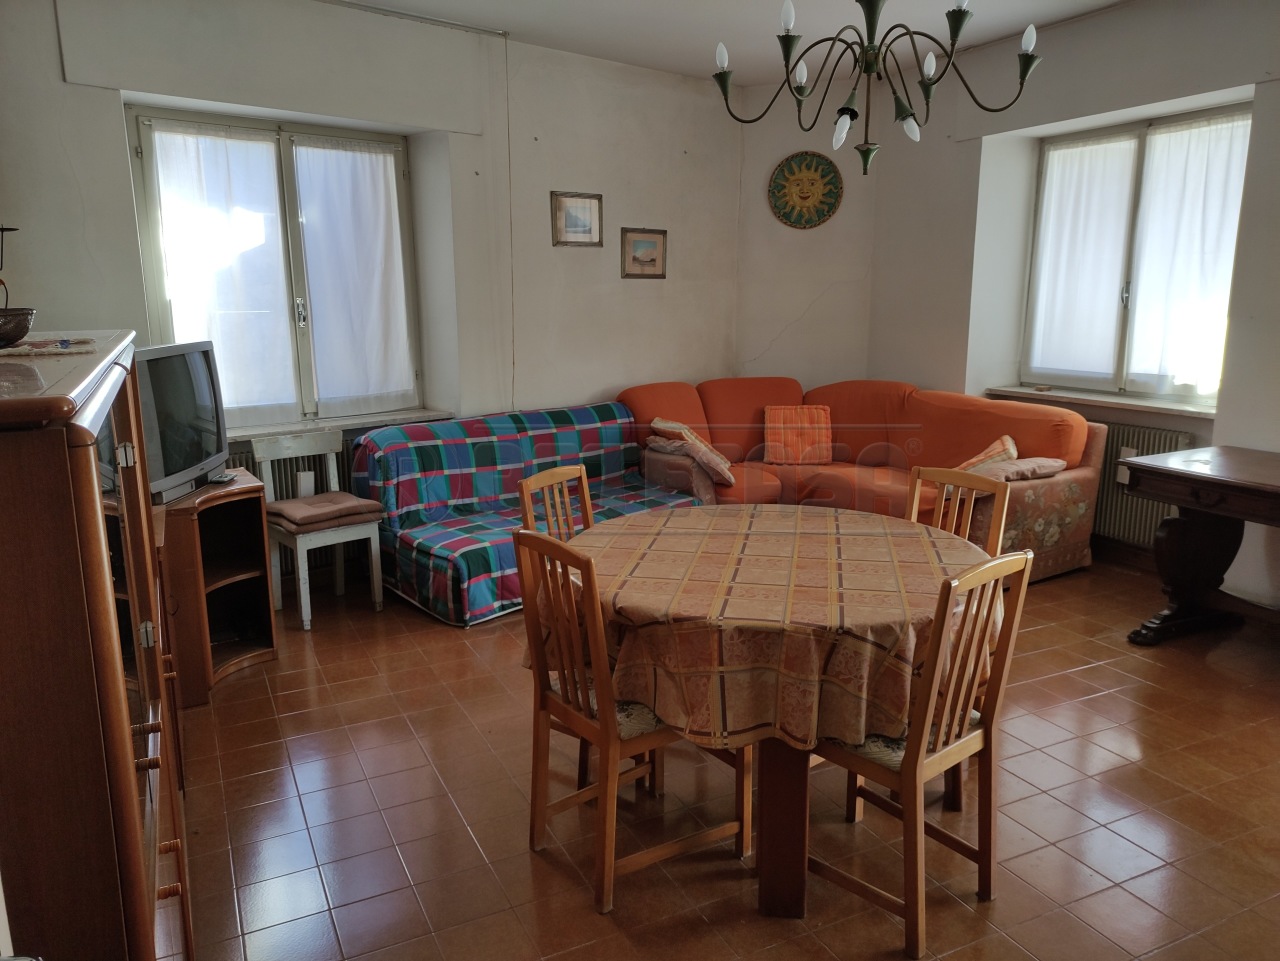 Appartamento in vendita a Tricesimo, 6 locali, prezzo € 85.000 | PortaleAgenzieImmobiliari.it